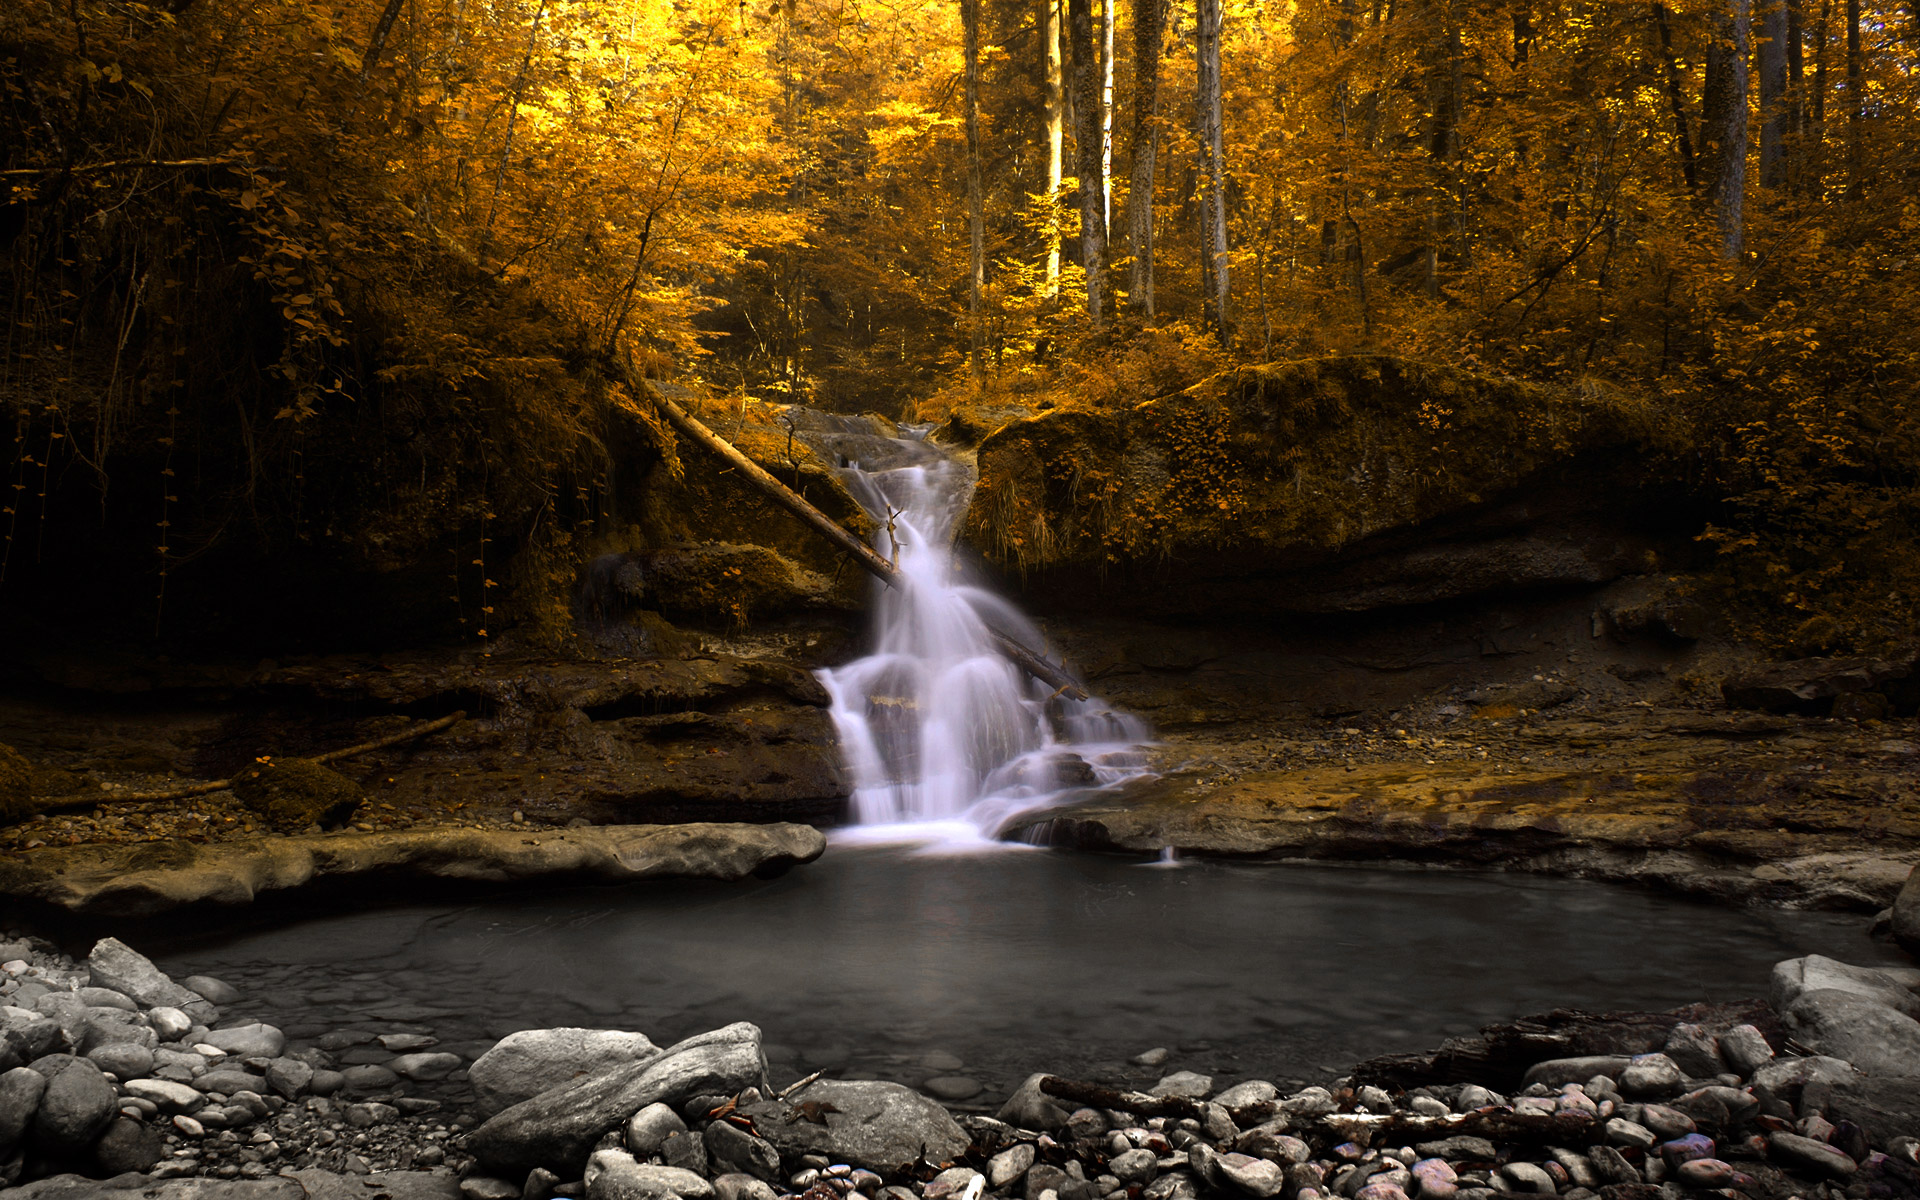 landscapes, forests, waterfalls - desktop wallpaper